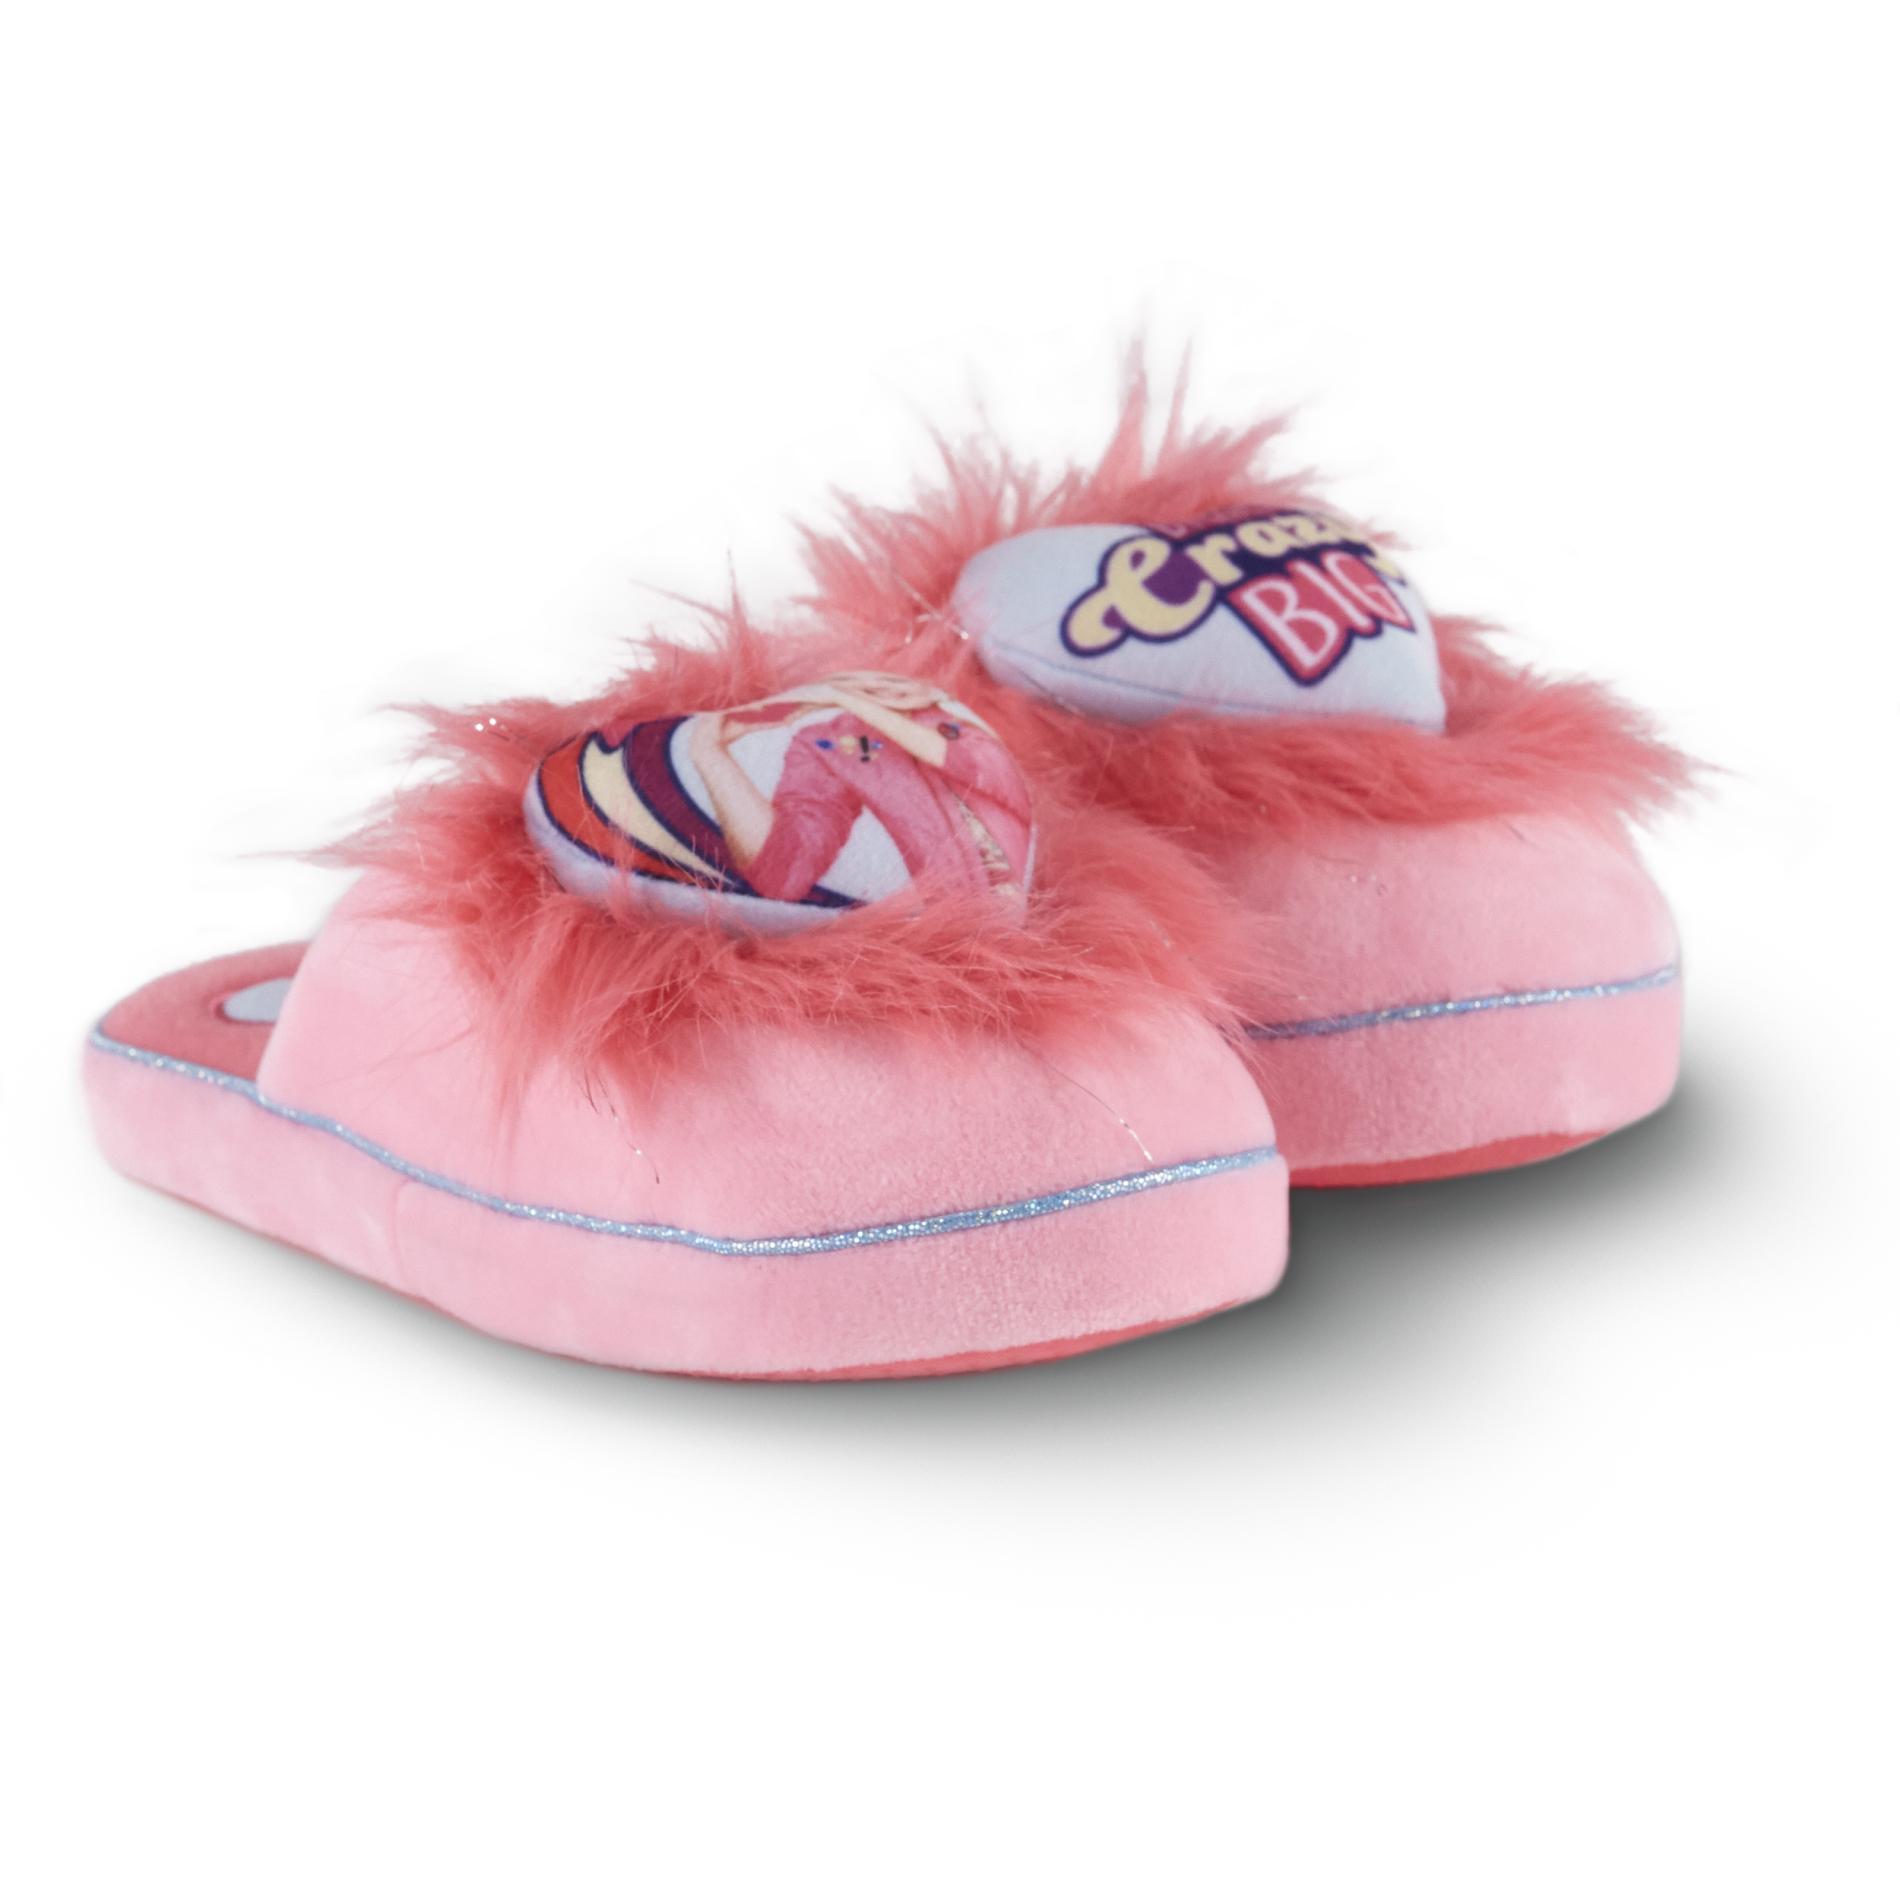 kmart childrens slippers